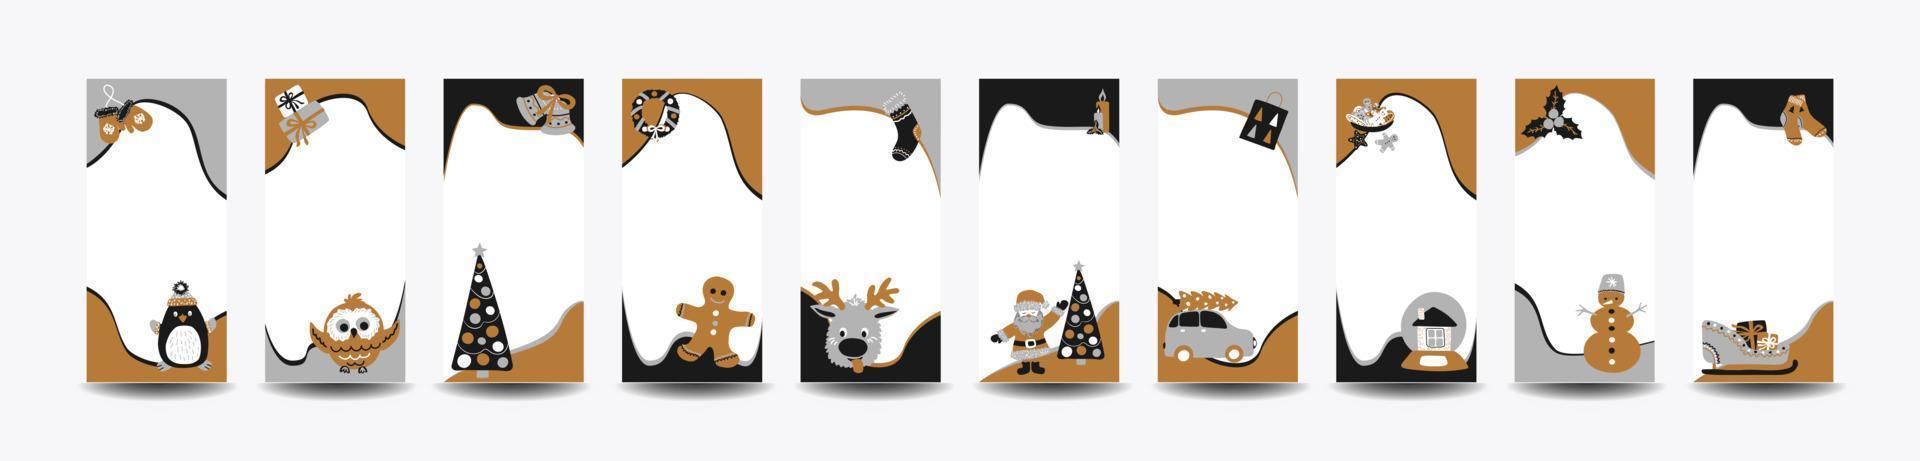 satz von 10 frohen weihnachtsgeschichten vorlage für soziale netzwerke im stil der skandinavischen einfachen handzeichnung. urlaubsrahmen in schichten für foto mit süßen charakteren - weihnachtsmann, rentier, lebkuchen. vektor